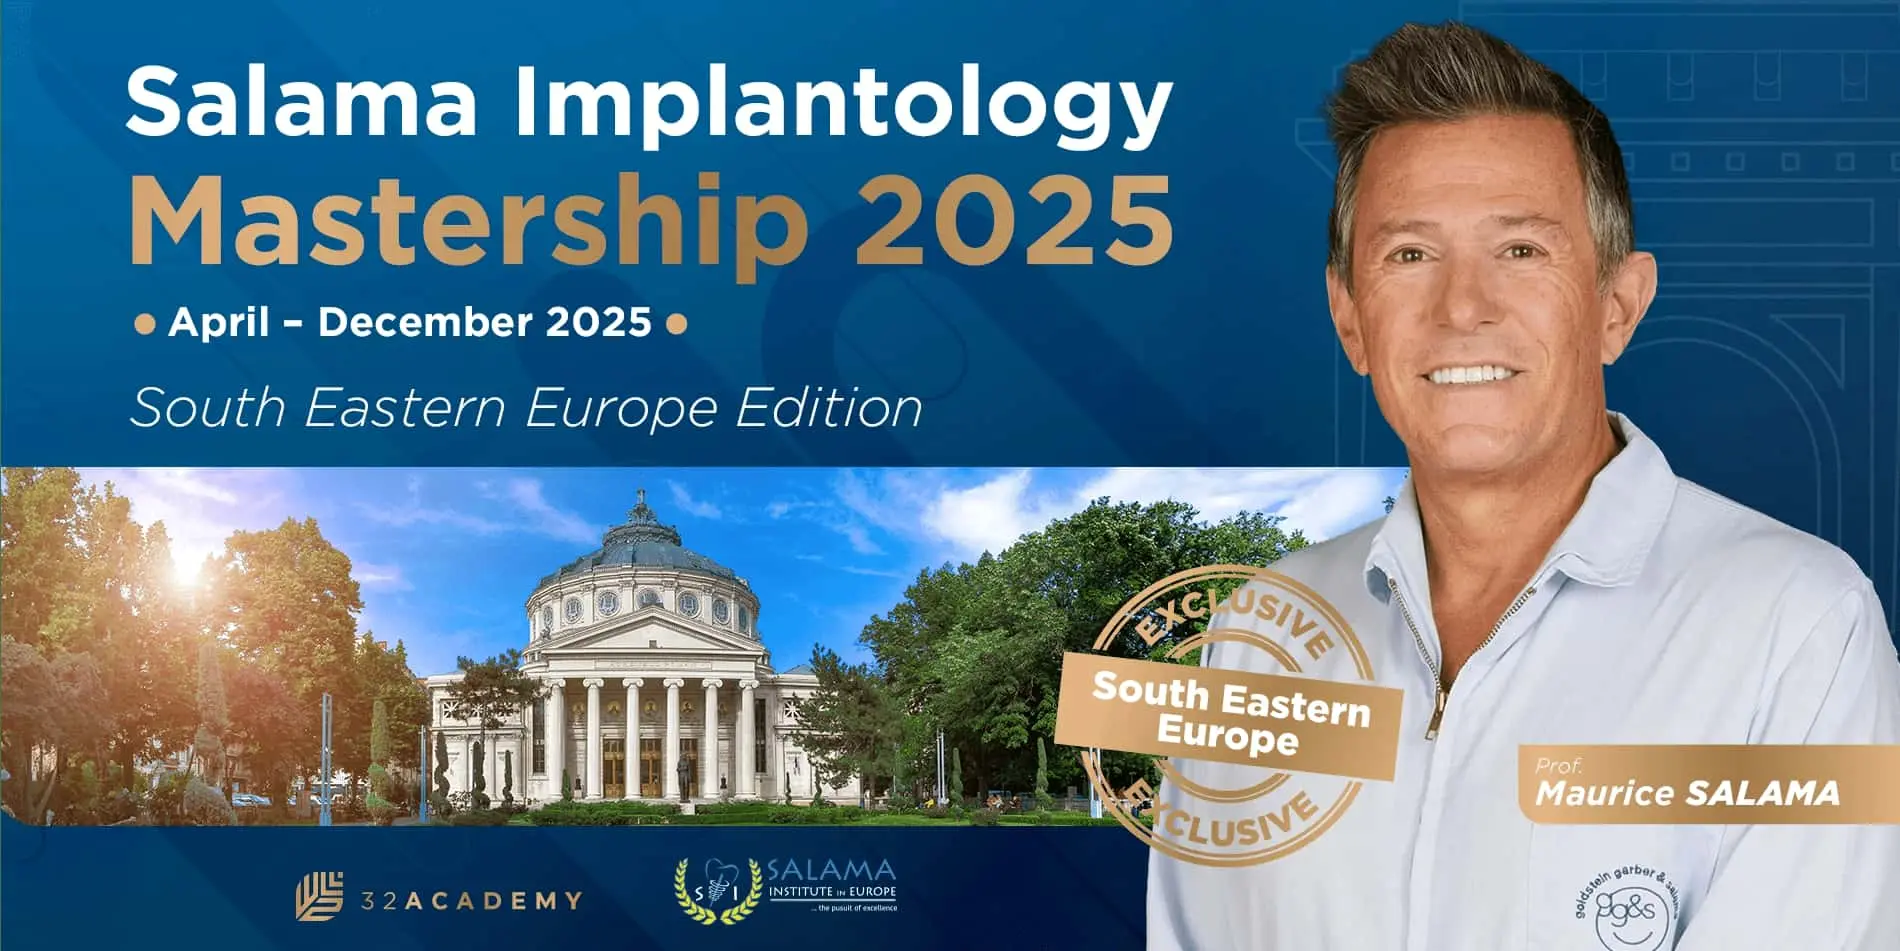 Salama Implantology Mastership 2025